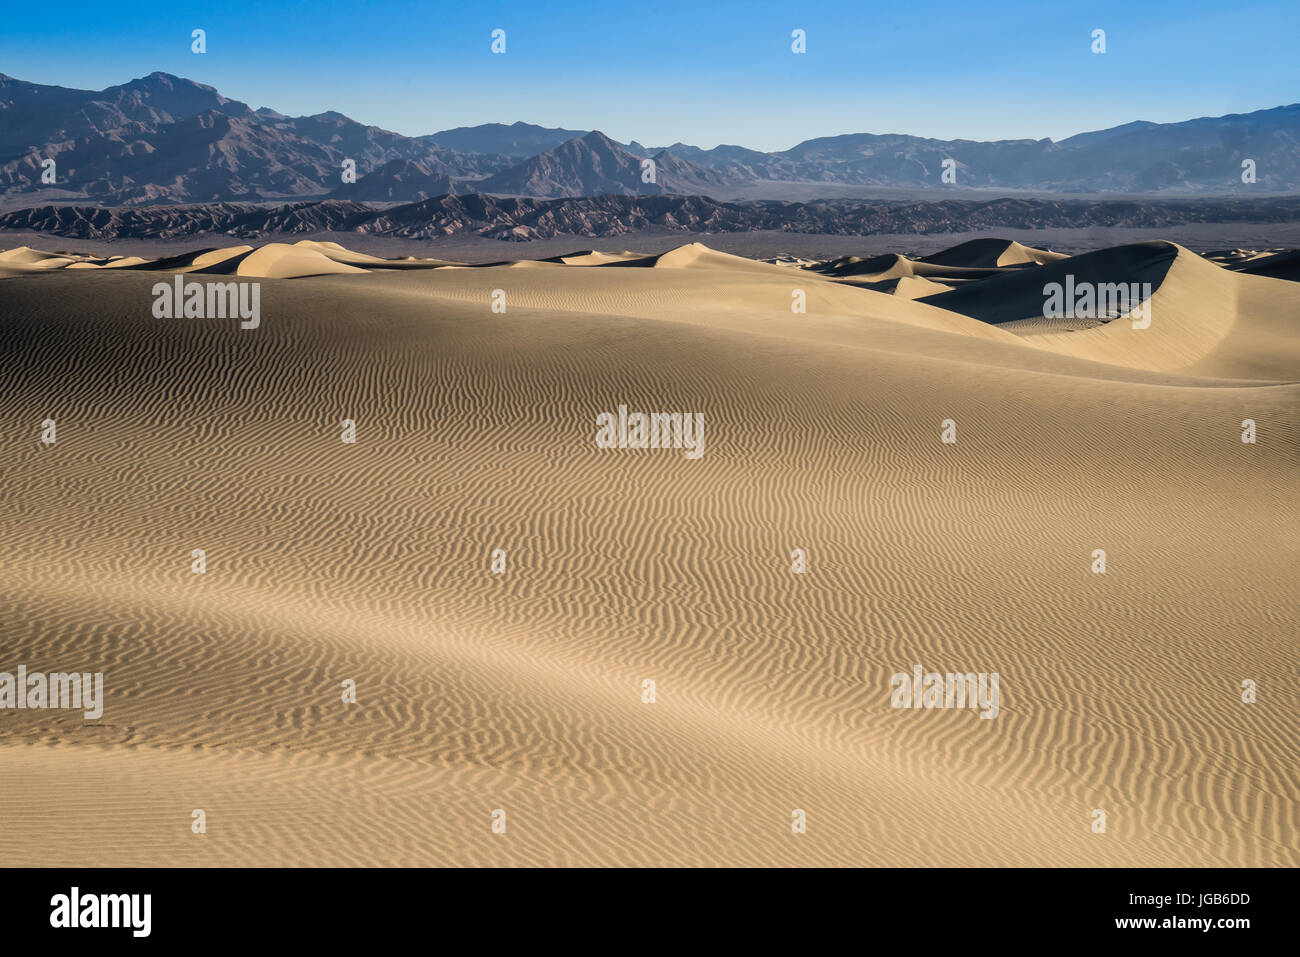 Le mesquite Dunes sont situées dans la région de Stovepipe Wells de la Death Valley National Park en Californie. Banque D'Images